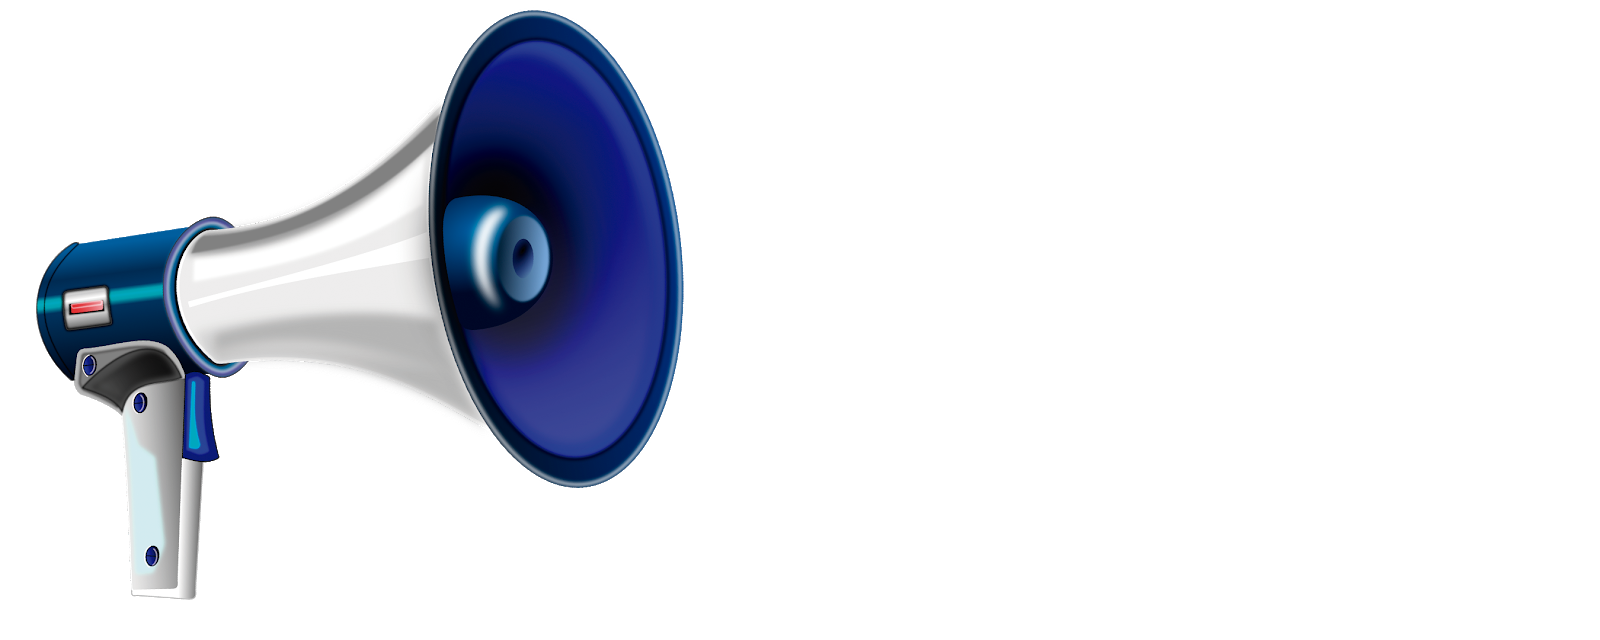 Sebastian Wiesner - Marketing Digital